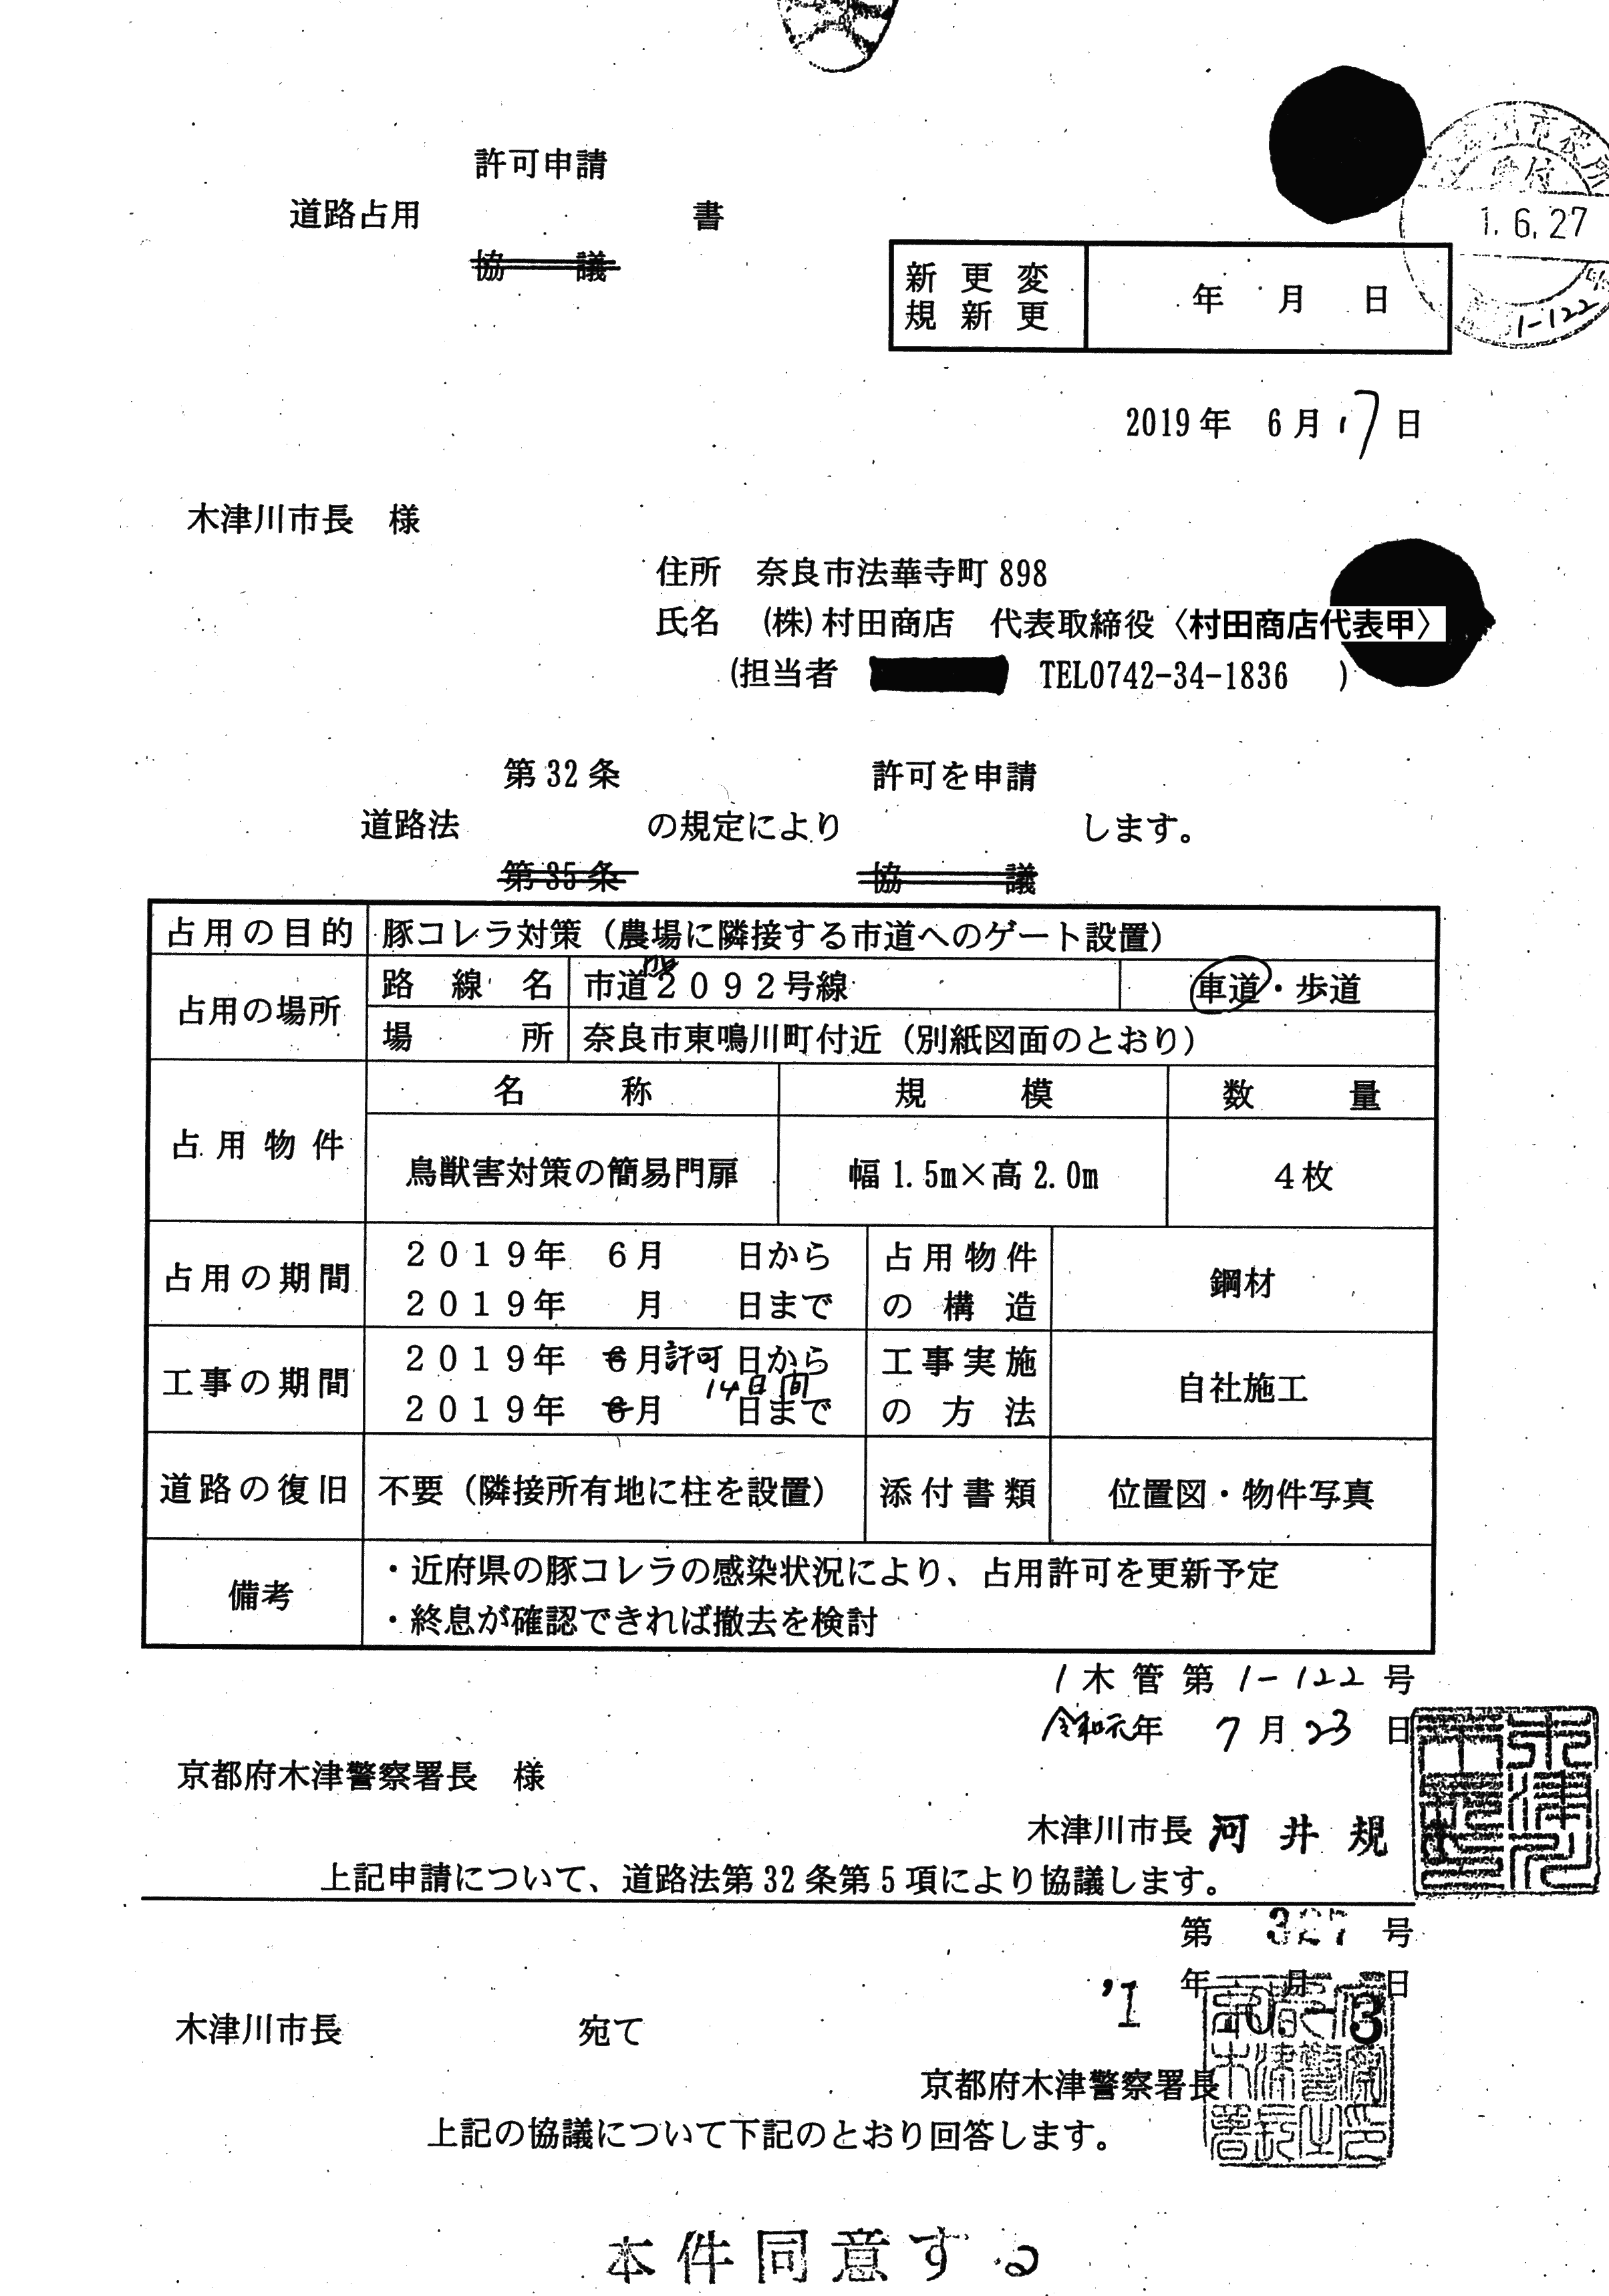 令和1年10月3日-木津警察署長同意書